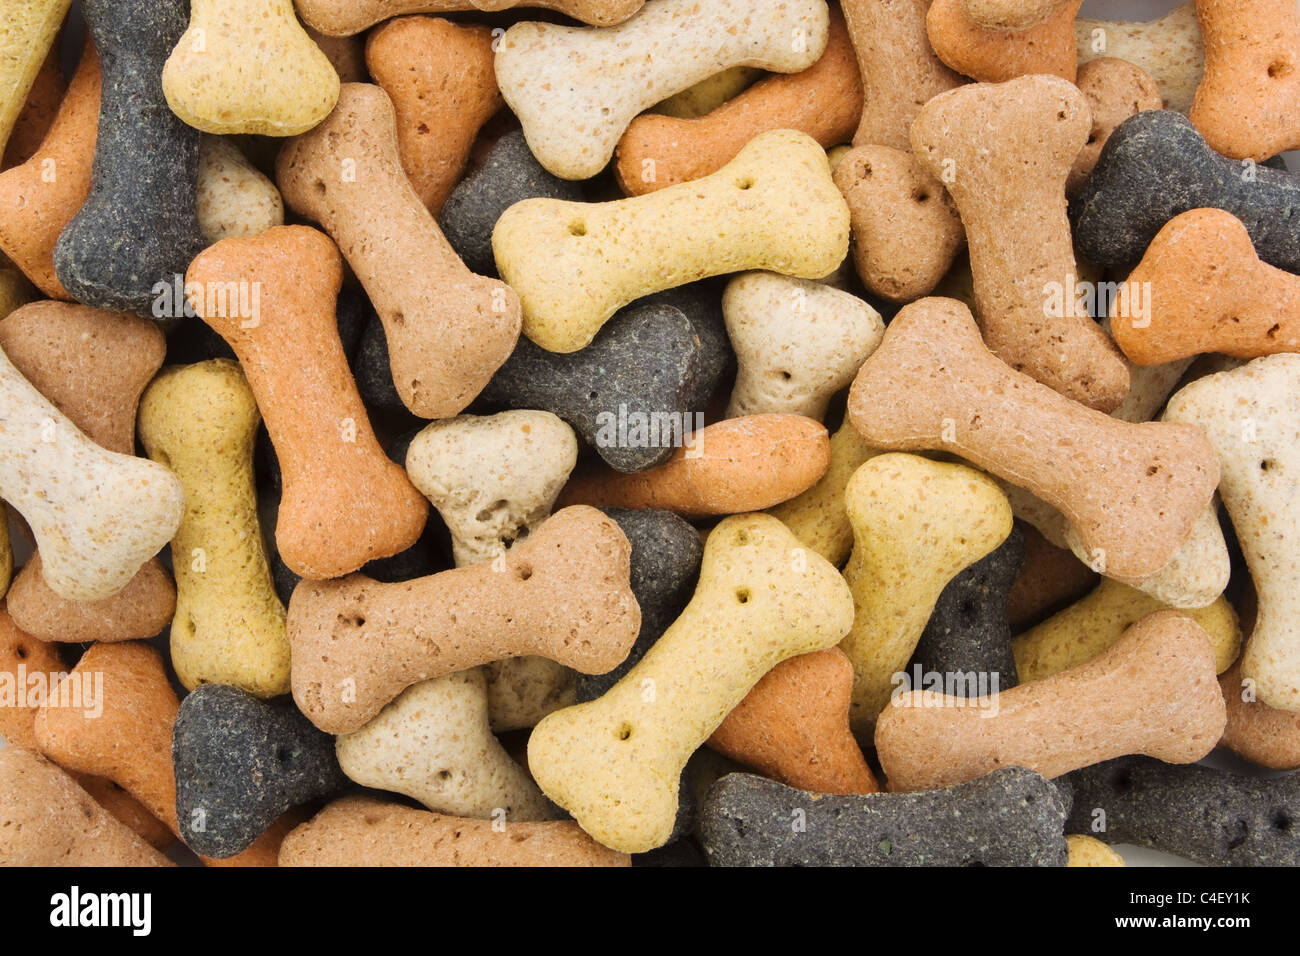 Background of bone shaped dog treats Stock Photo